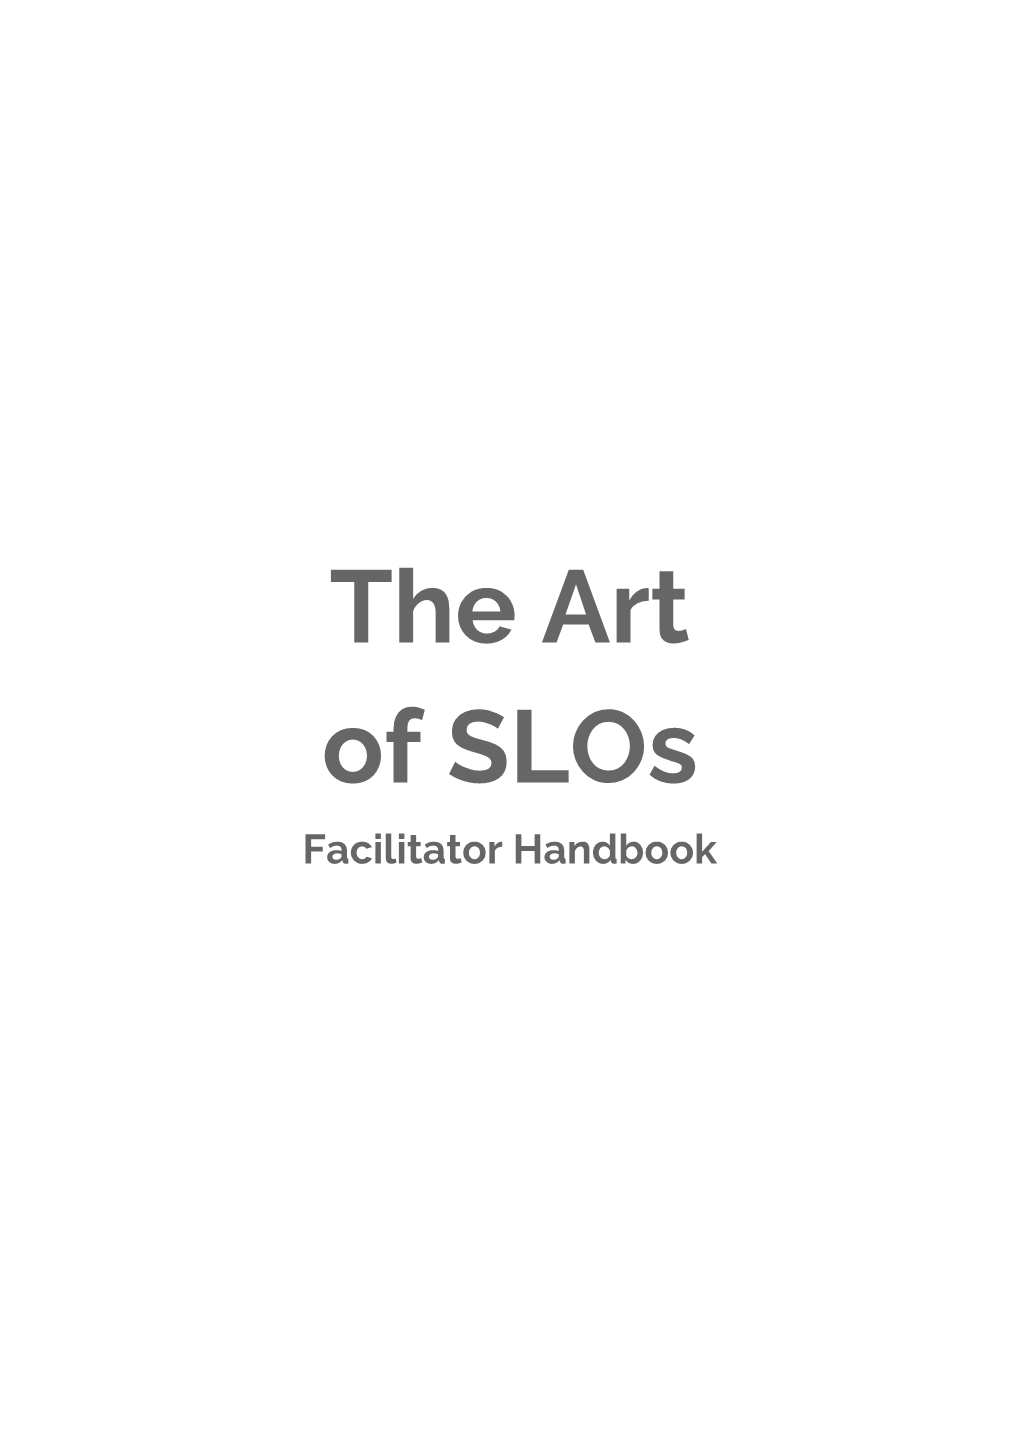 The Art of Slos Facilitator Handbook